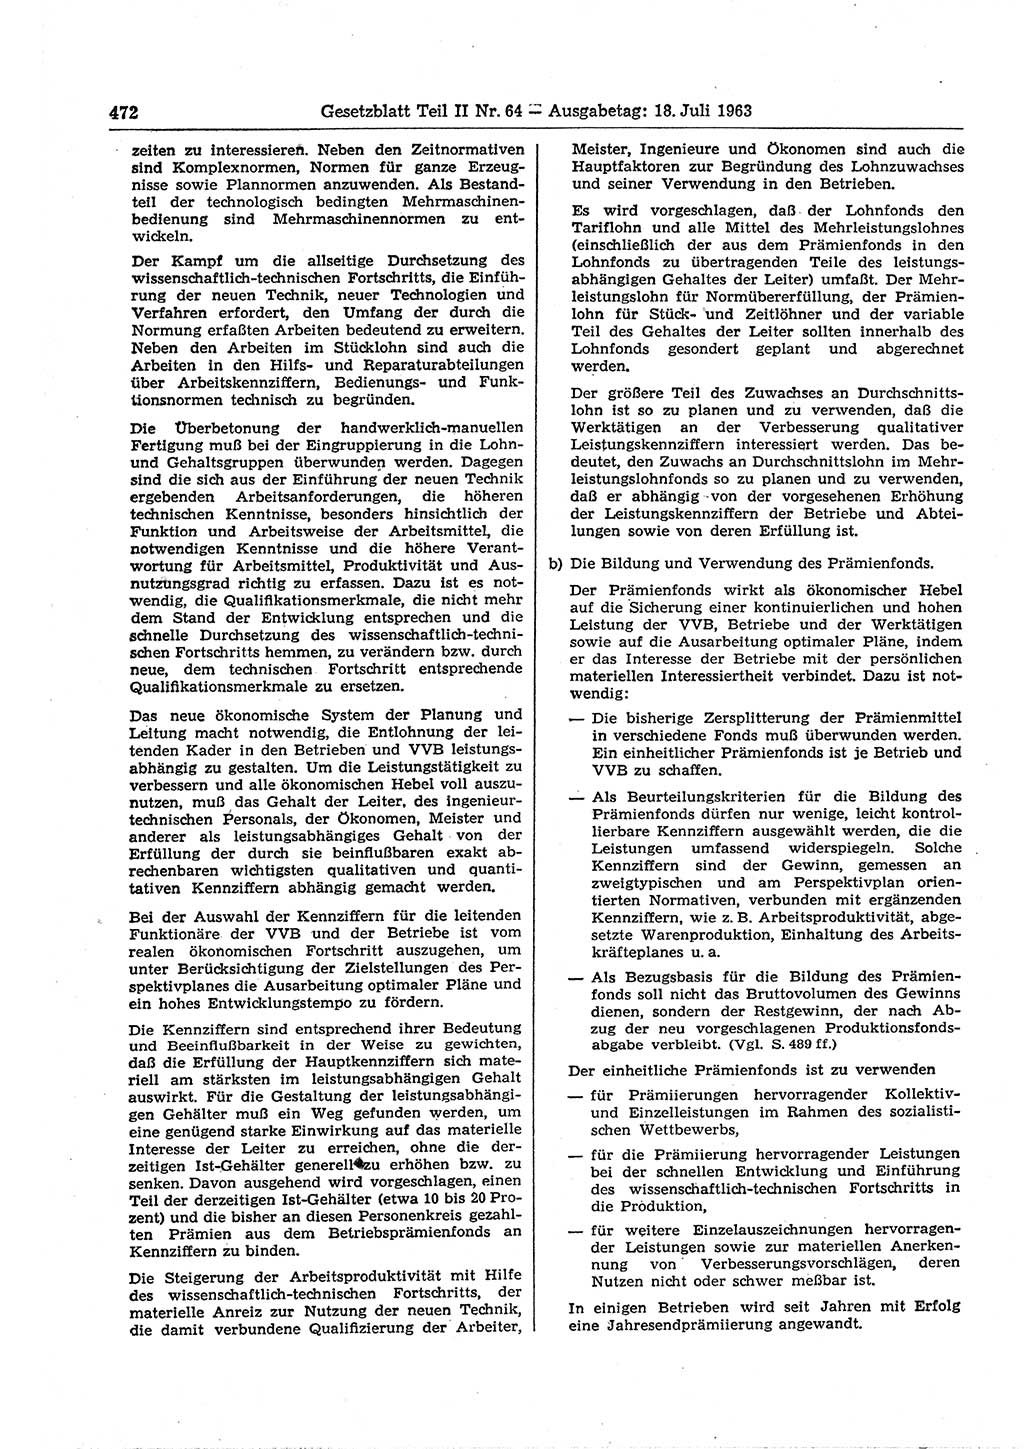 Gesetzblatt (GBl.) der Deutschen Demokratischen Republik (DDR) Teil ⅠⅠ 1963, Seite 472 (GBl. DDR ⅠⅠ 1963, S. 472)